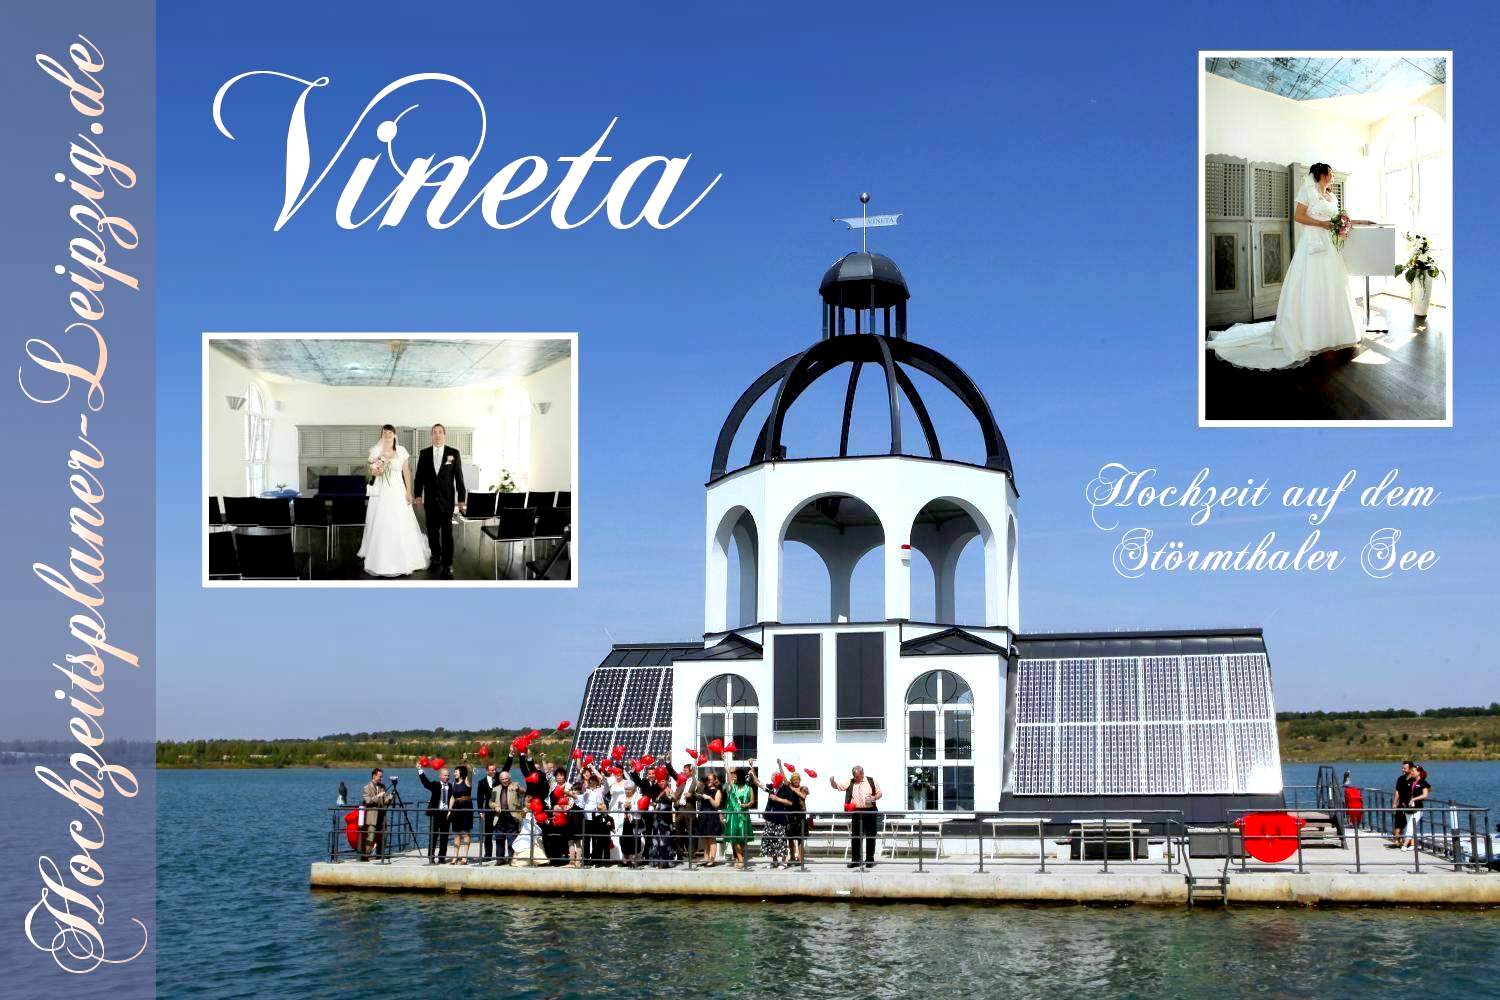 Trauort Vineta - Heiraten auf dem Strmthaler See 